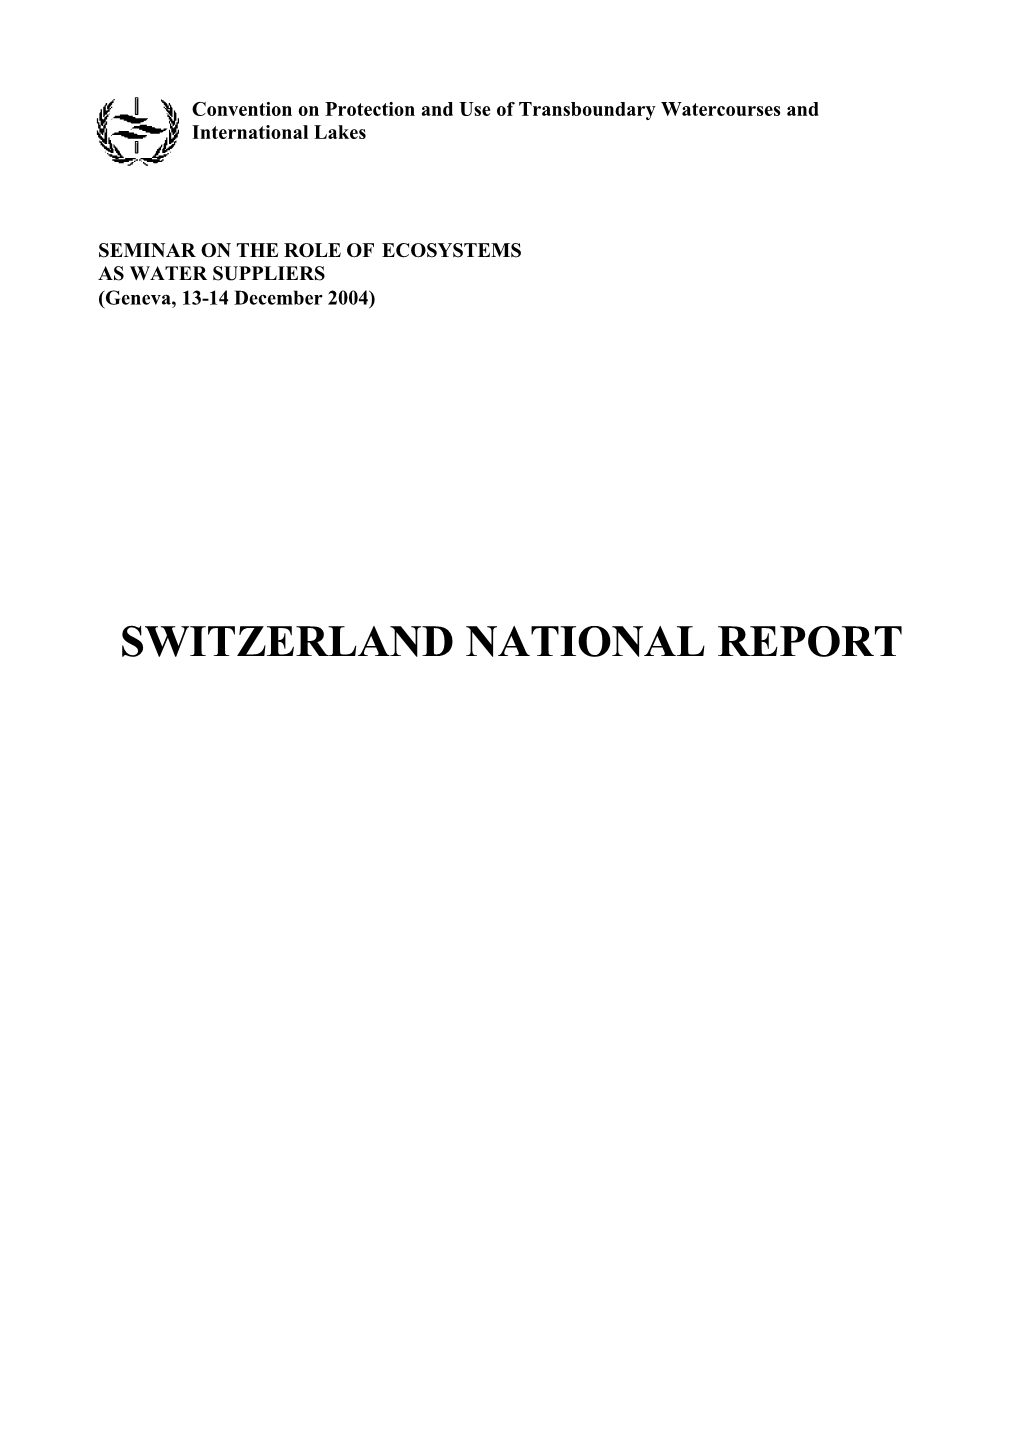 Switzerland National Report